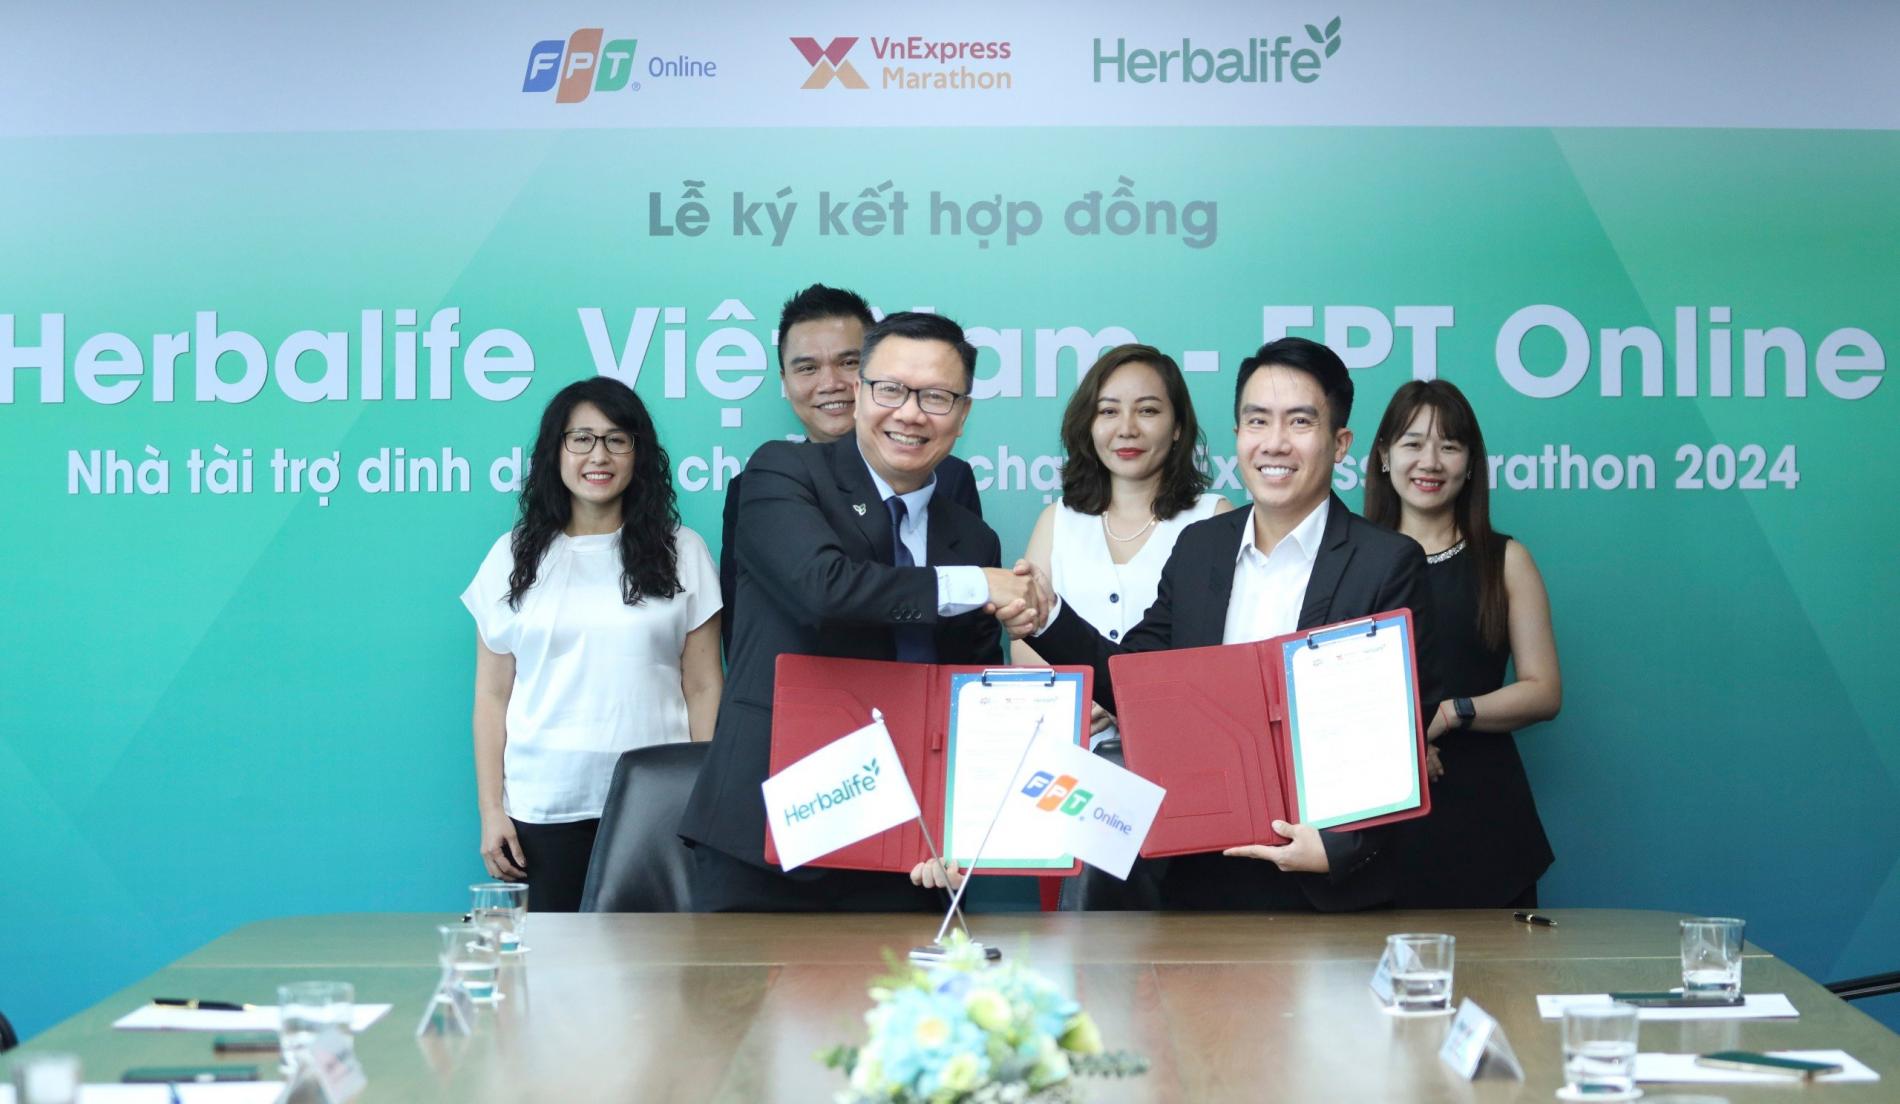 Herbalife là nhà tài trợ dinh dưỡng chuỗi giải VnExpress Marathon 2024